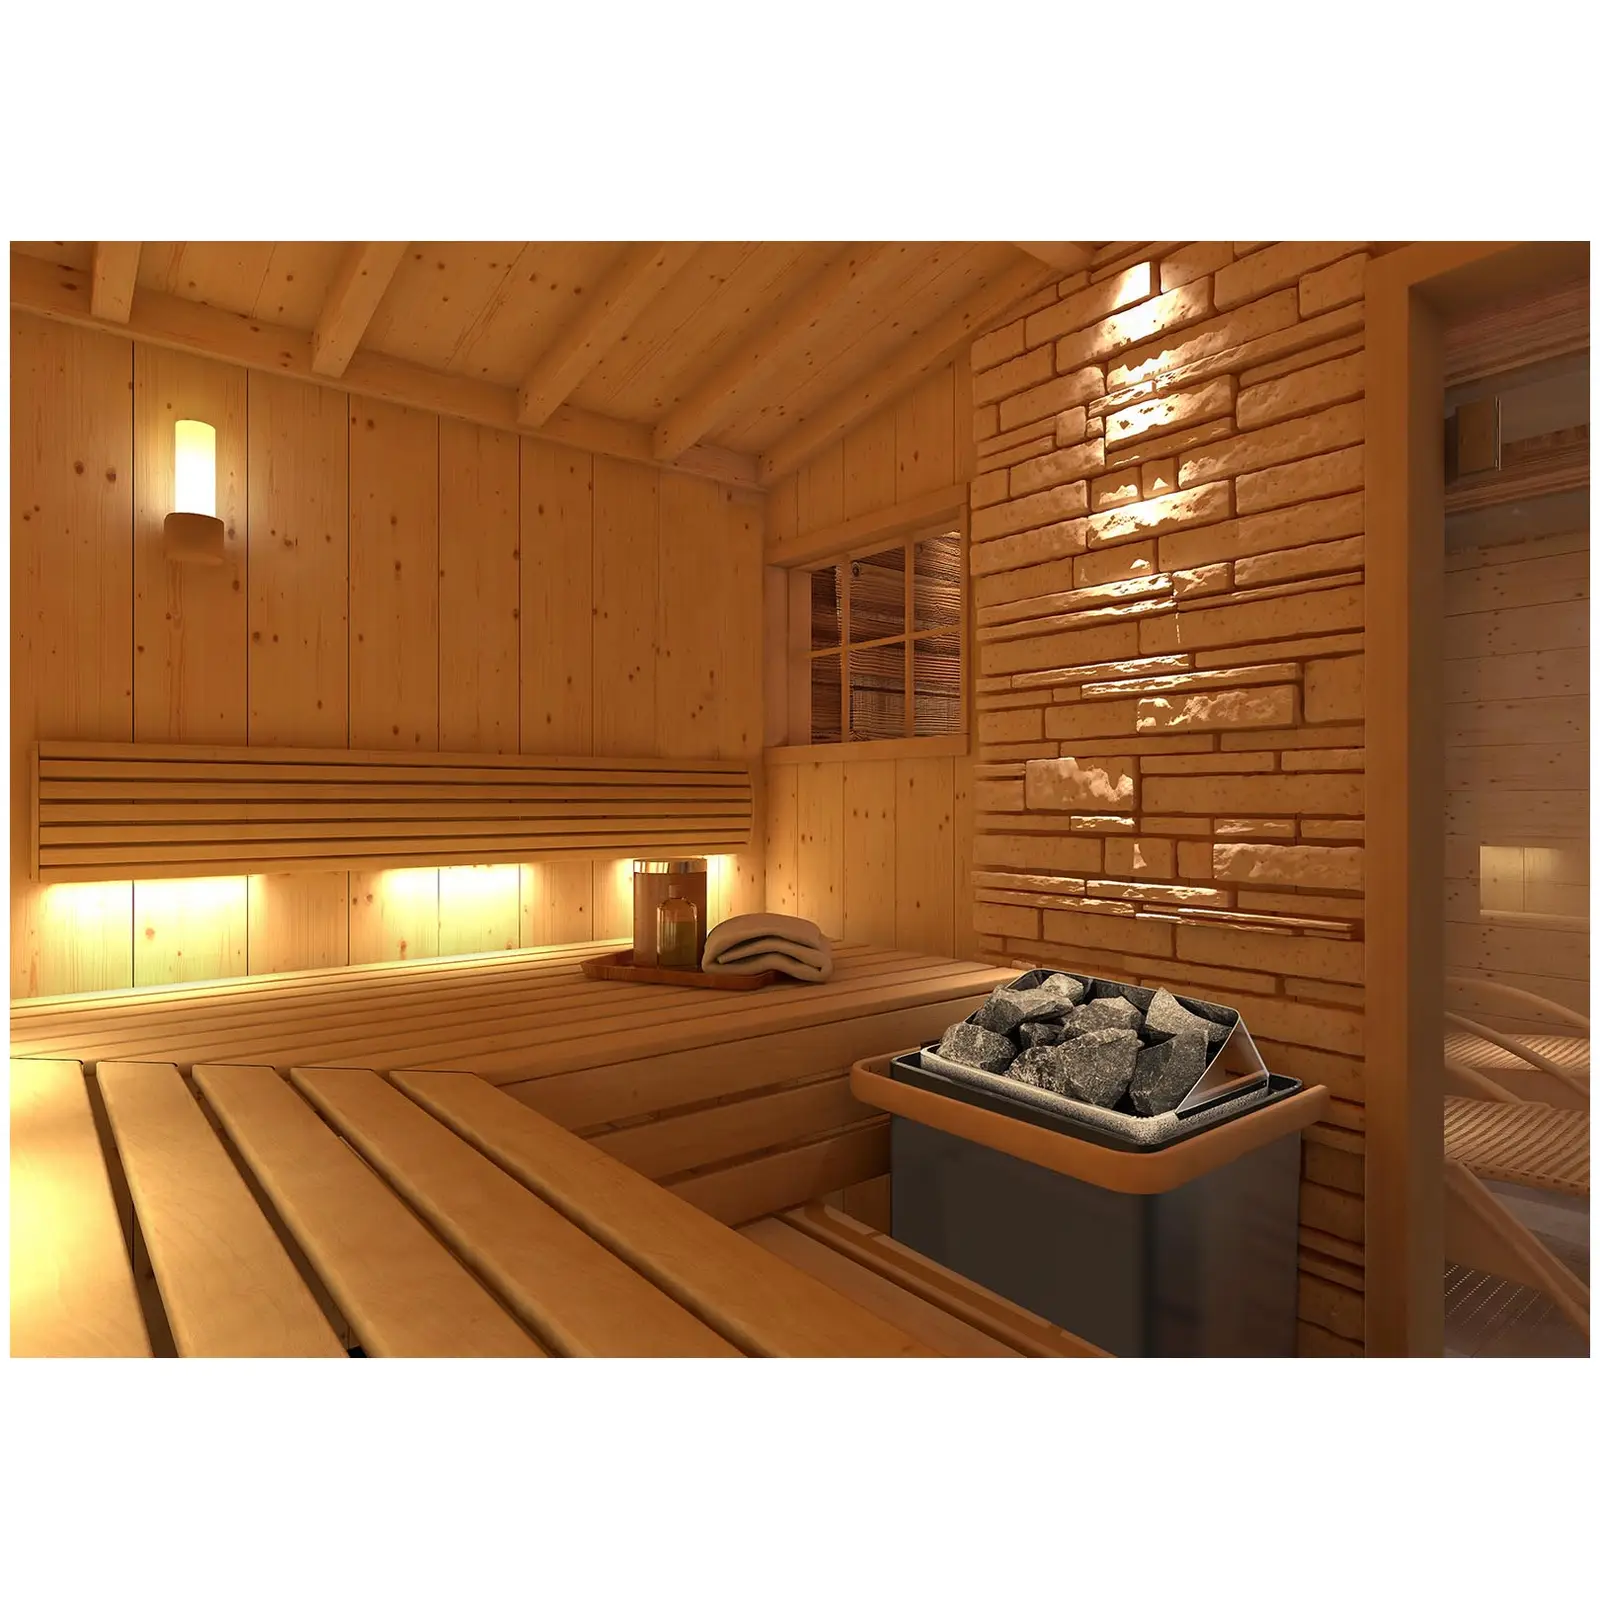 Saunová kamna s řídicí jednotkou pro sauny - 9 kW - 30 až 110 °C - LED displej